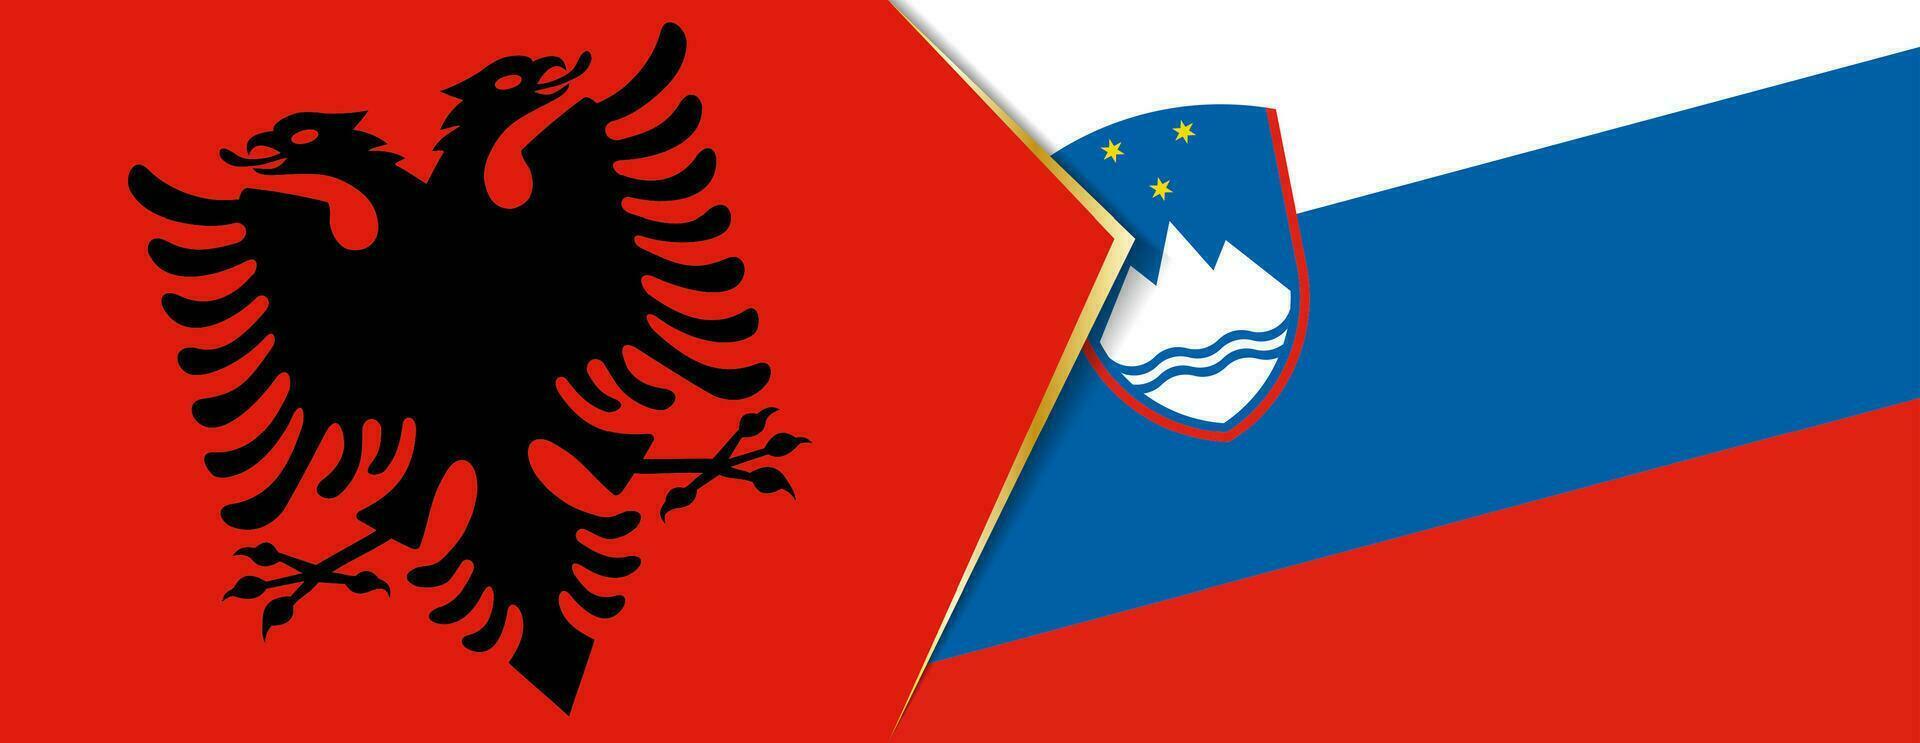 Albania y Eslovenia banderas, dos vector banderas